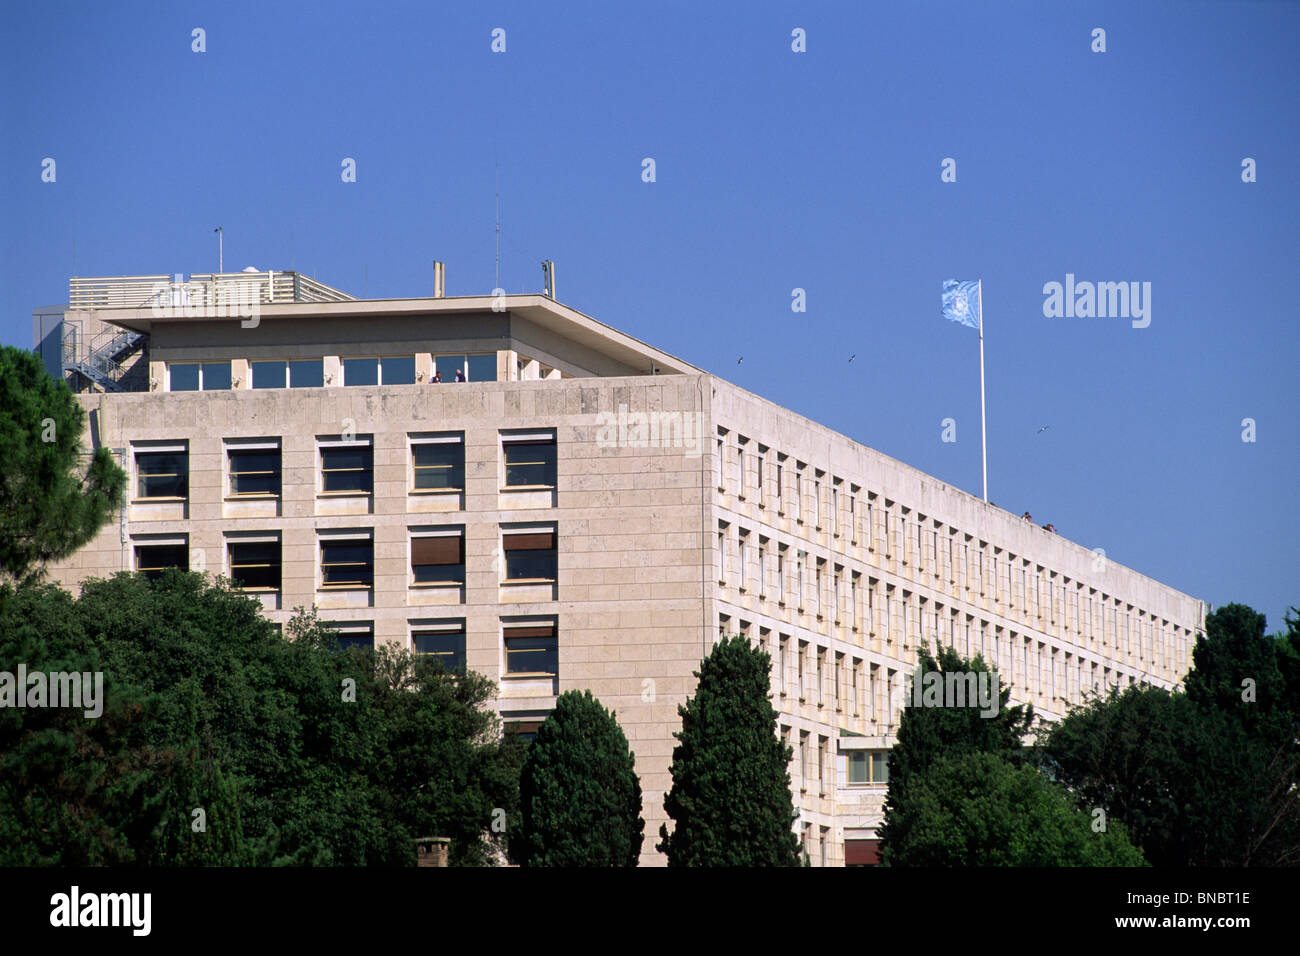 italy, rome, fao headquarters Stock Photo